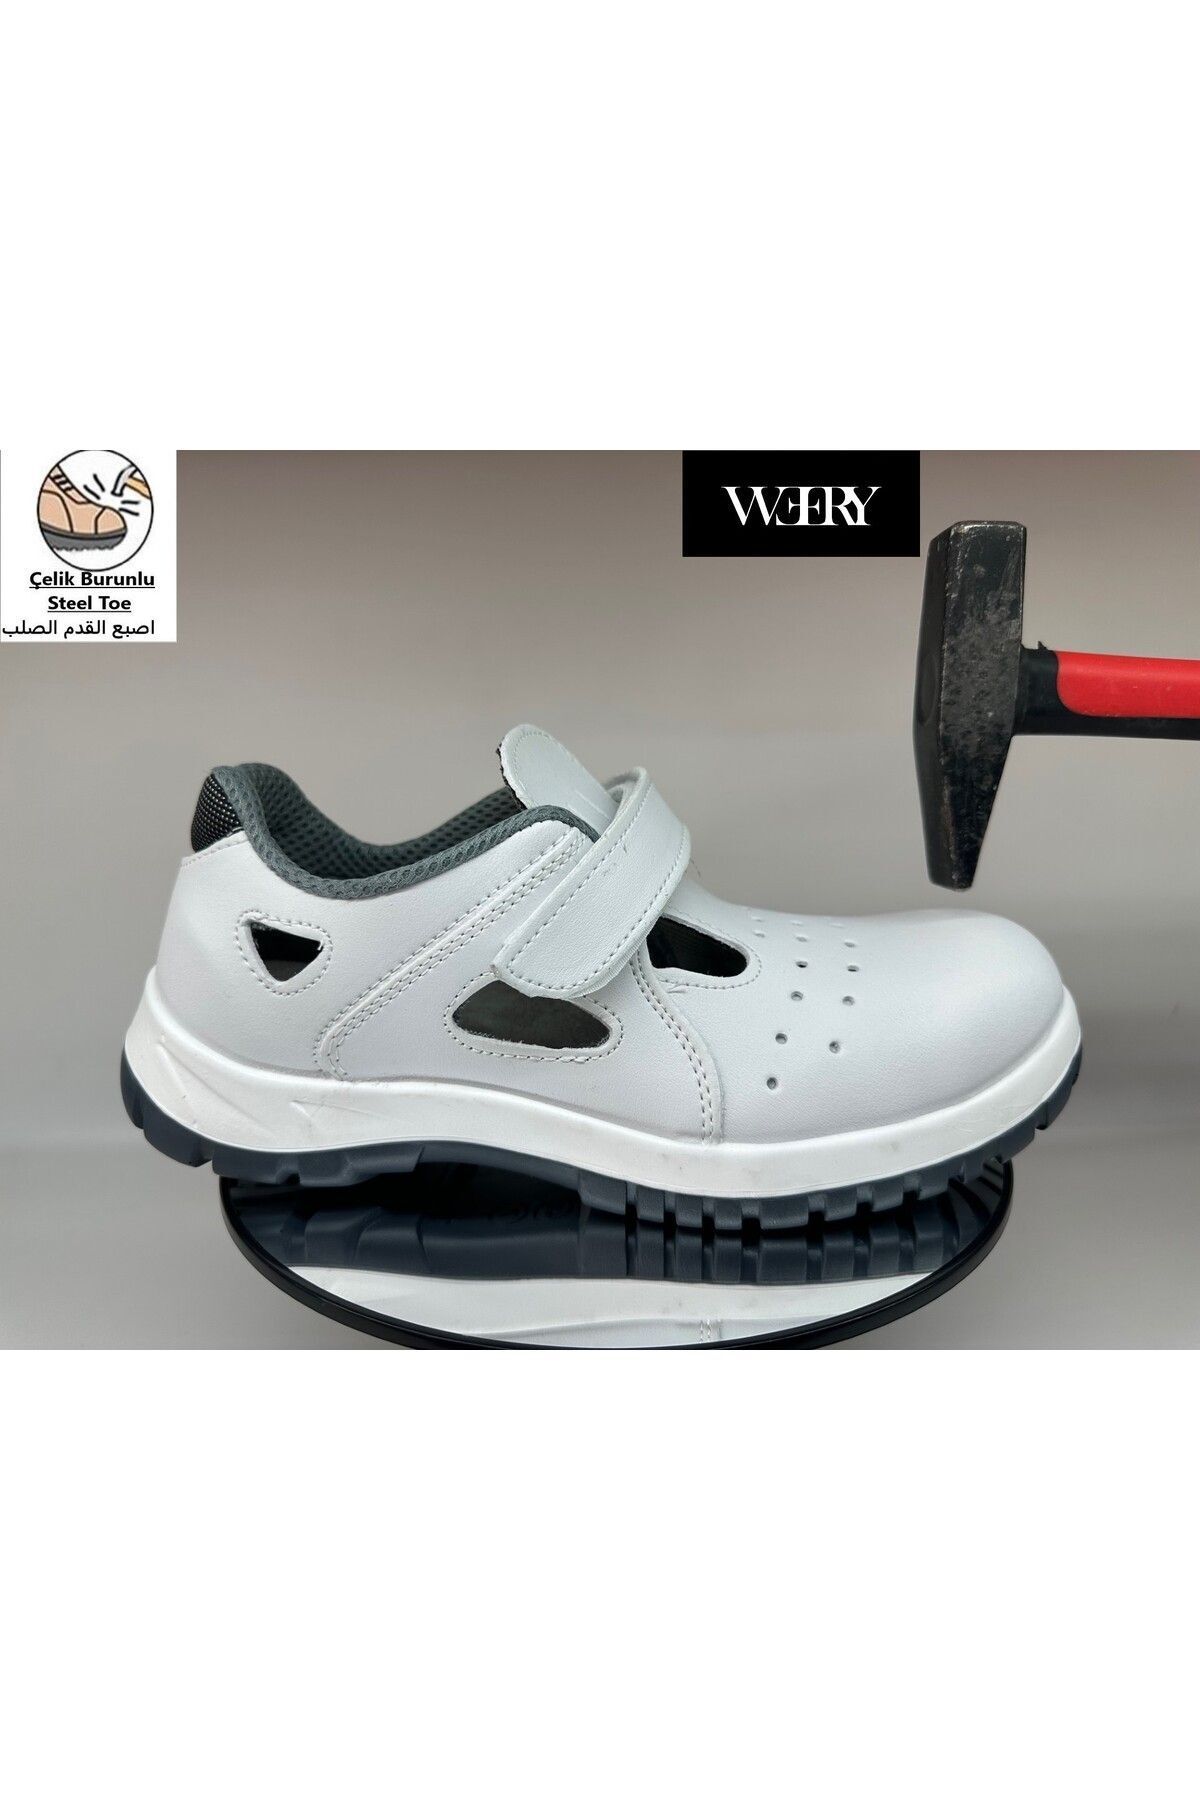 e&e Mekap 234 S1 Beyaz Microfiber Kaydırmaz Tabanlı Yazlık Çelik Burunlu Sandalet Model İş Ayakkabısı